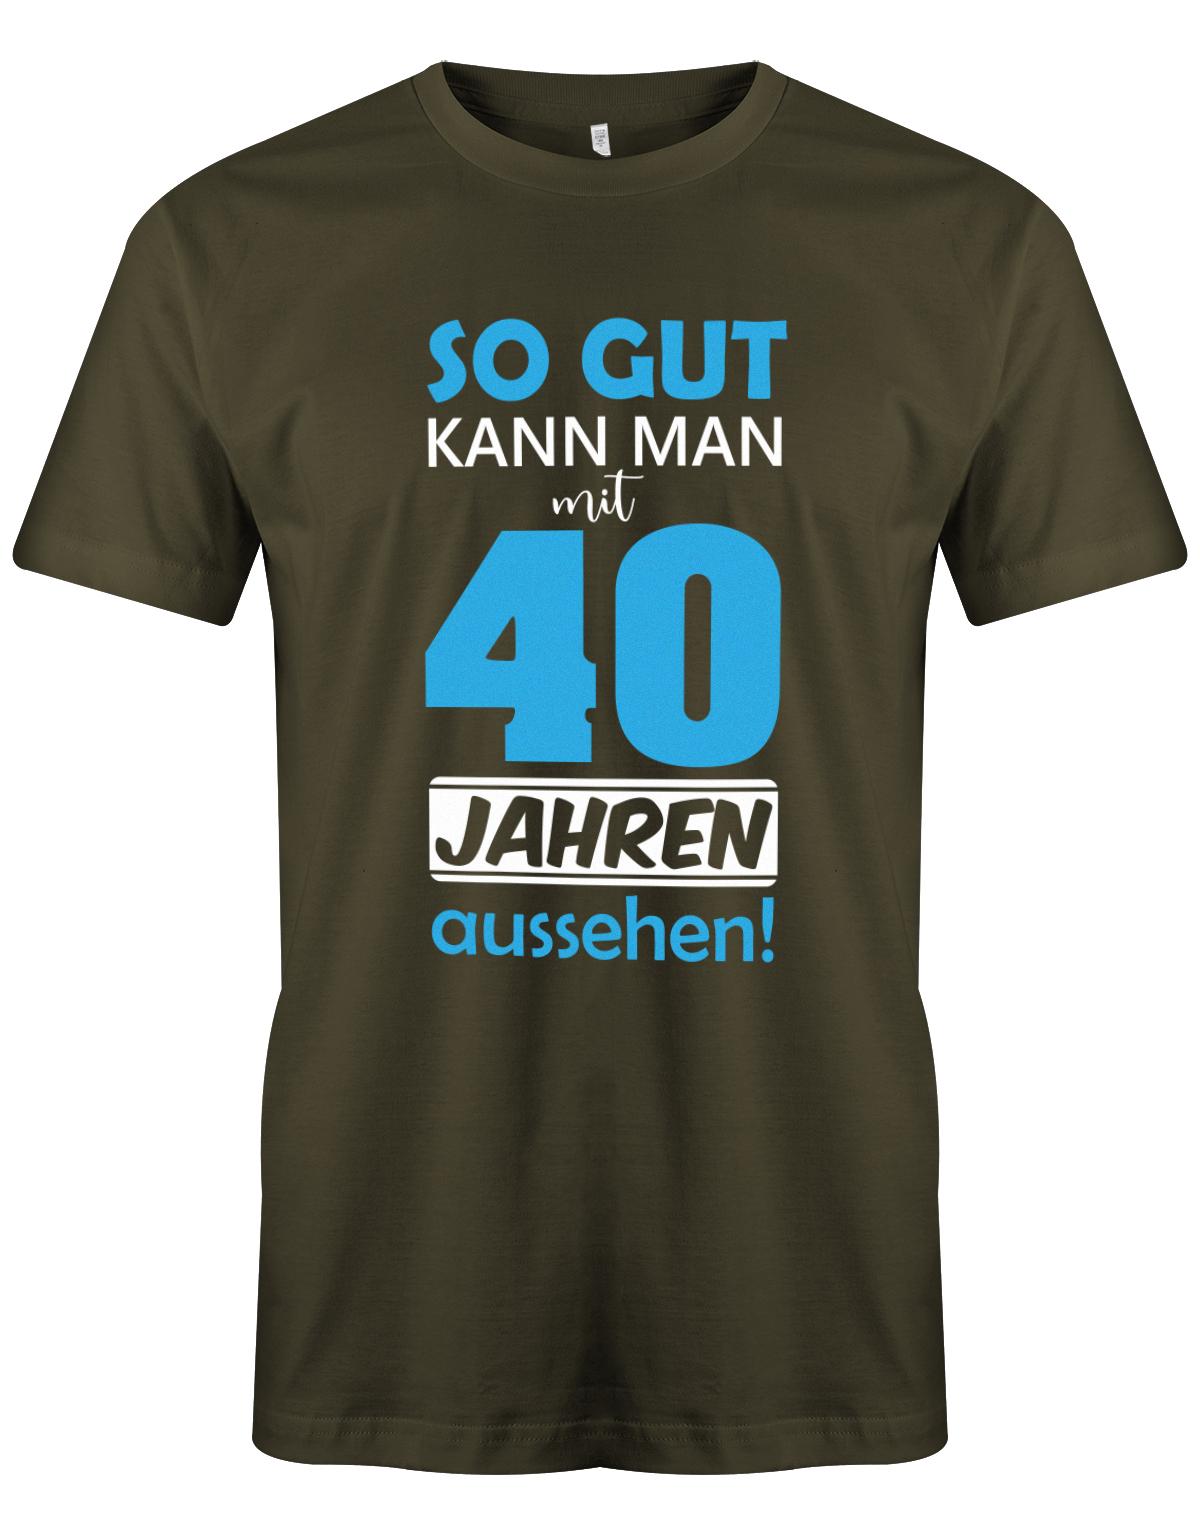 So gut kann man mit 40 Jahren aussehen - Special  - T-Shirt 40 Geburtstag Männer myShirtStore Army